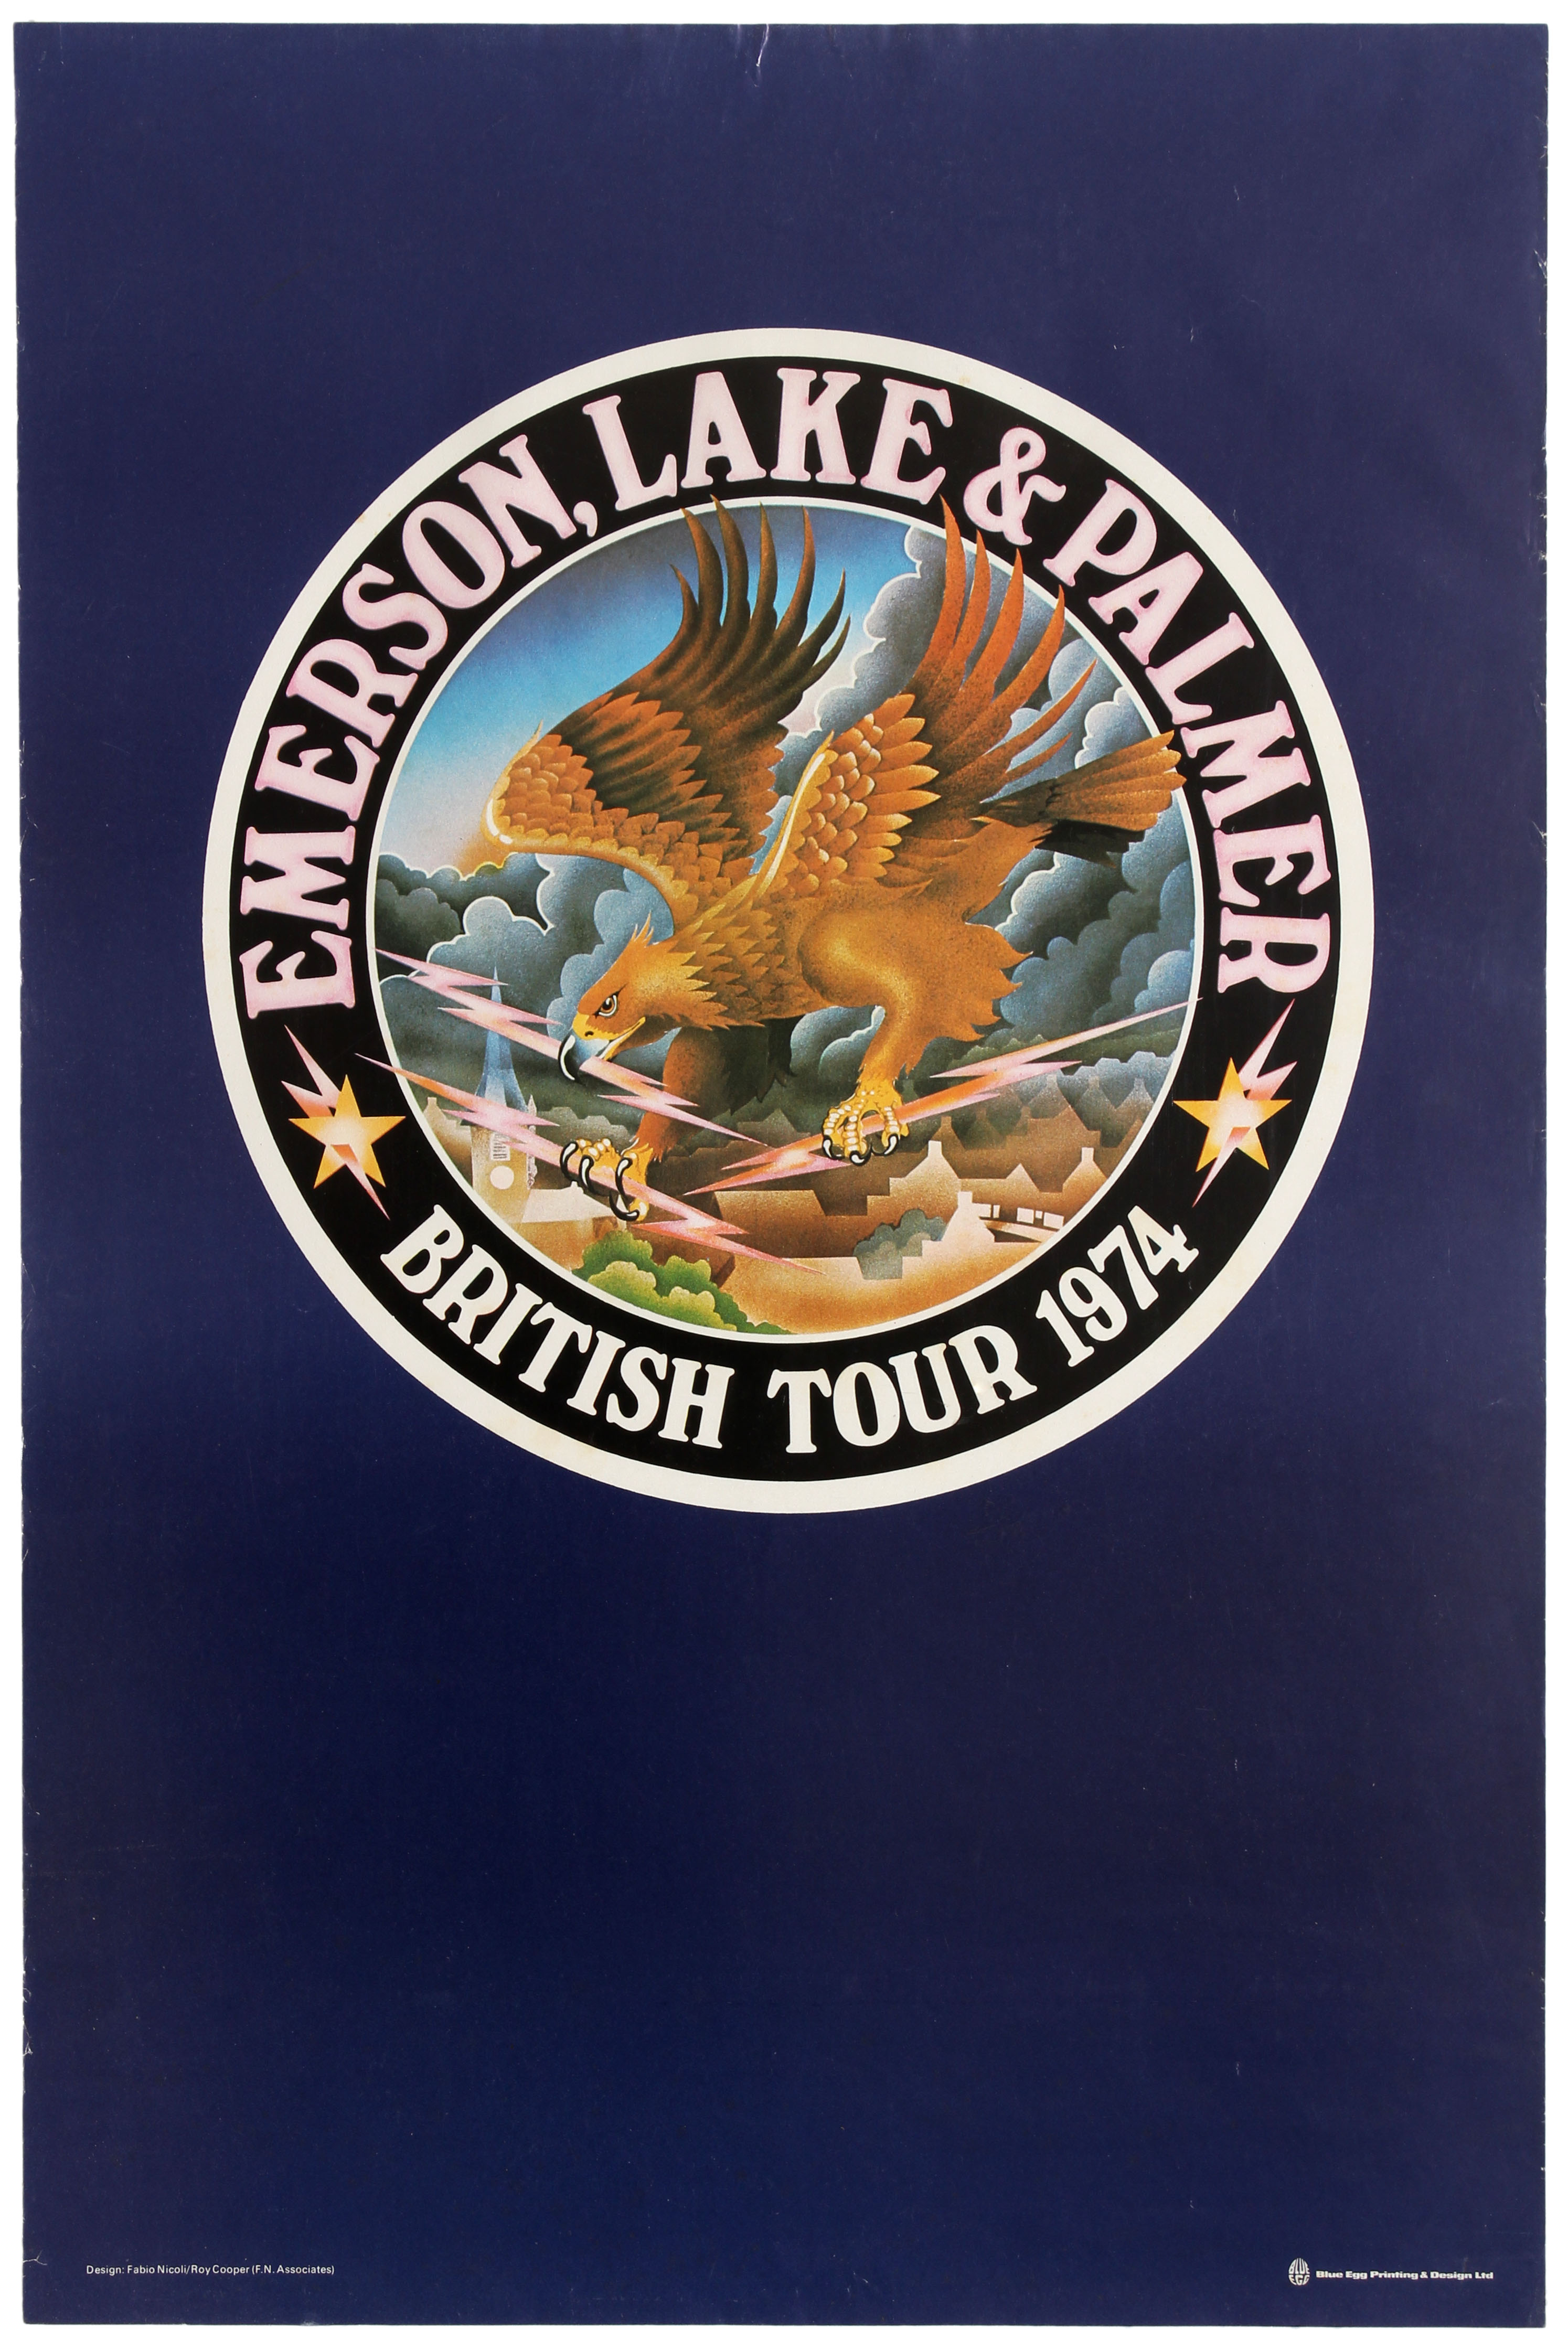 Advertising Poster Emerson Lake & Palmer Rock Music Tour 1974